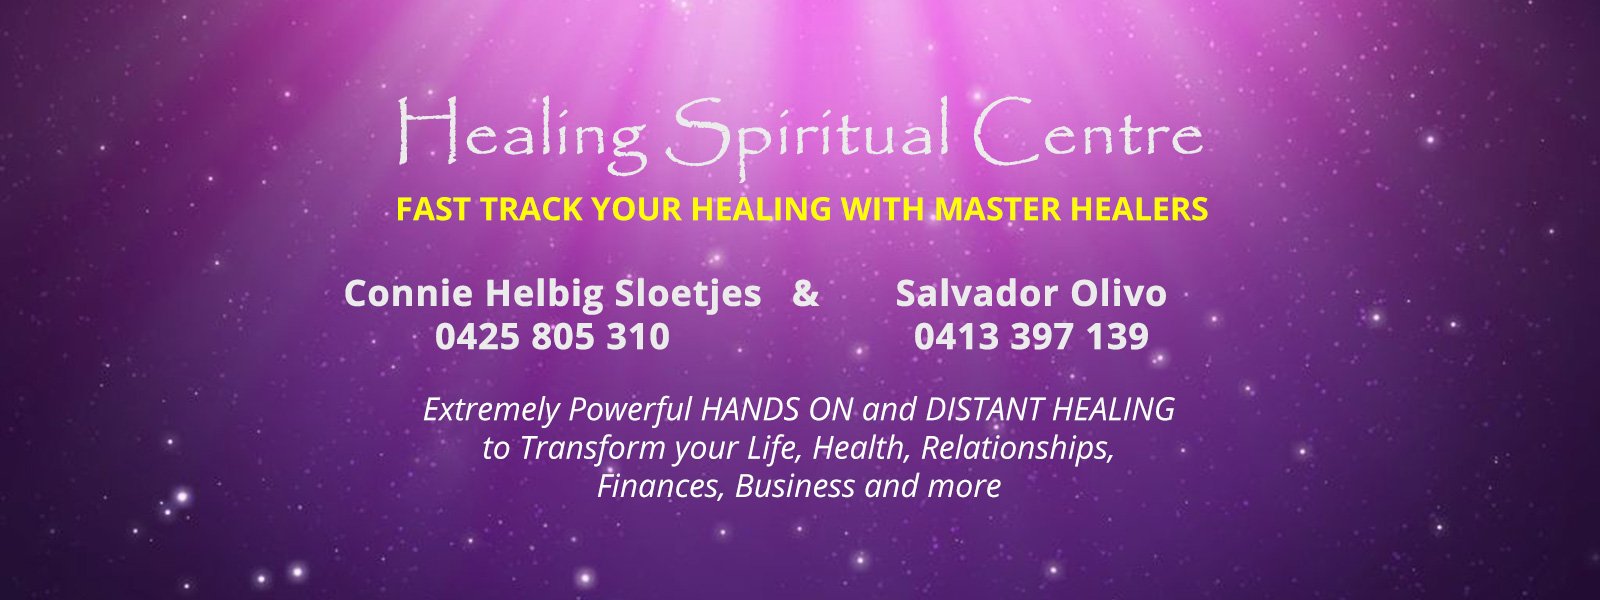 Home - Healing Spiritual Centre | Connie Helbig Sloetjes & Salvador ...